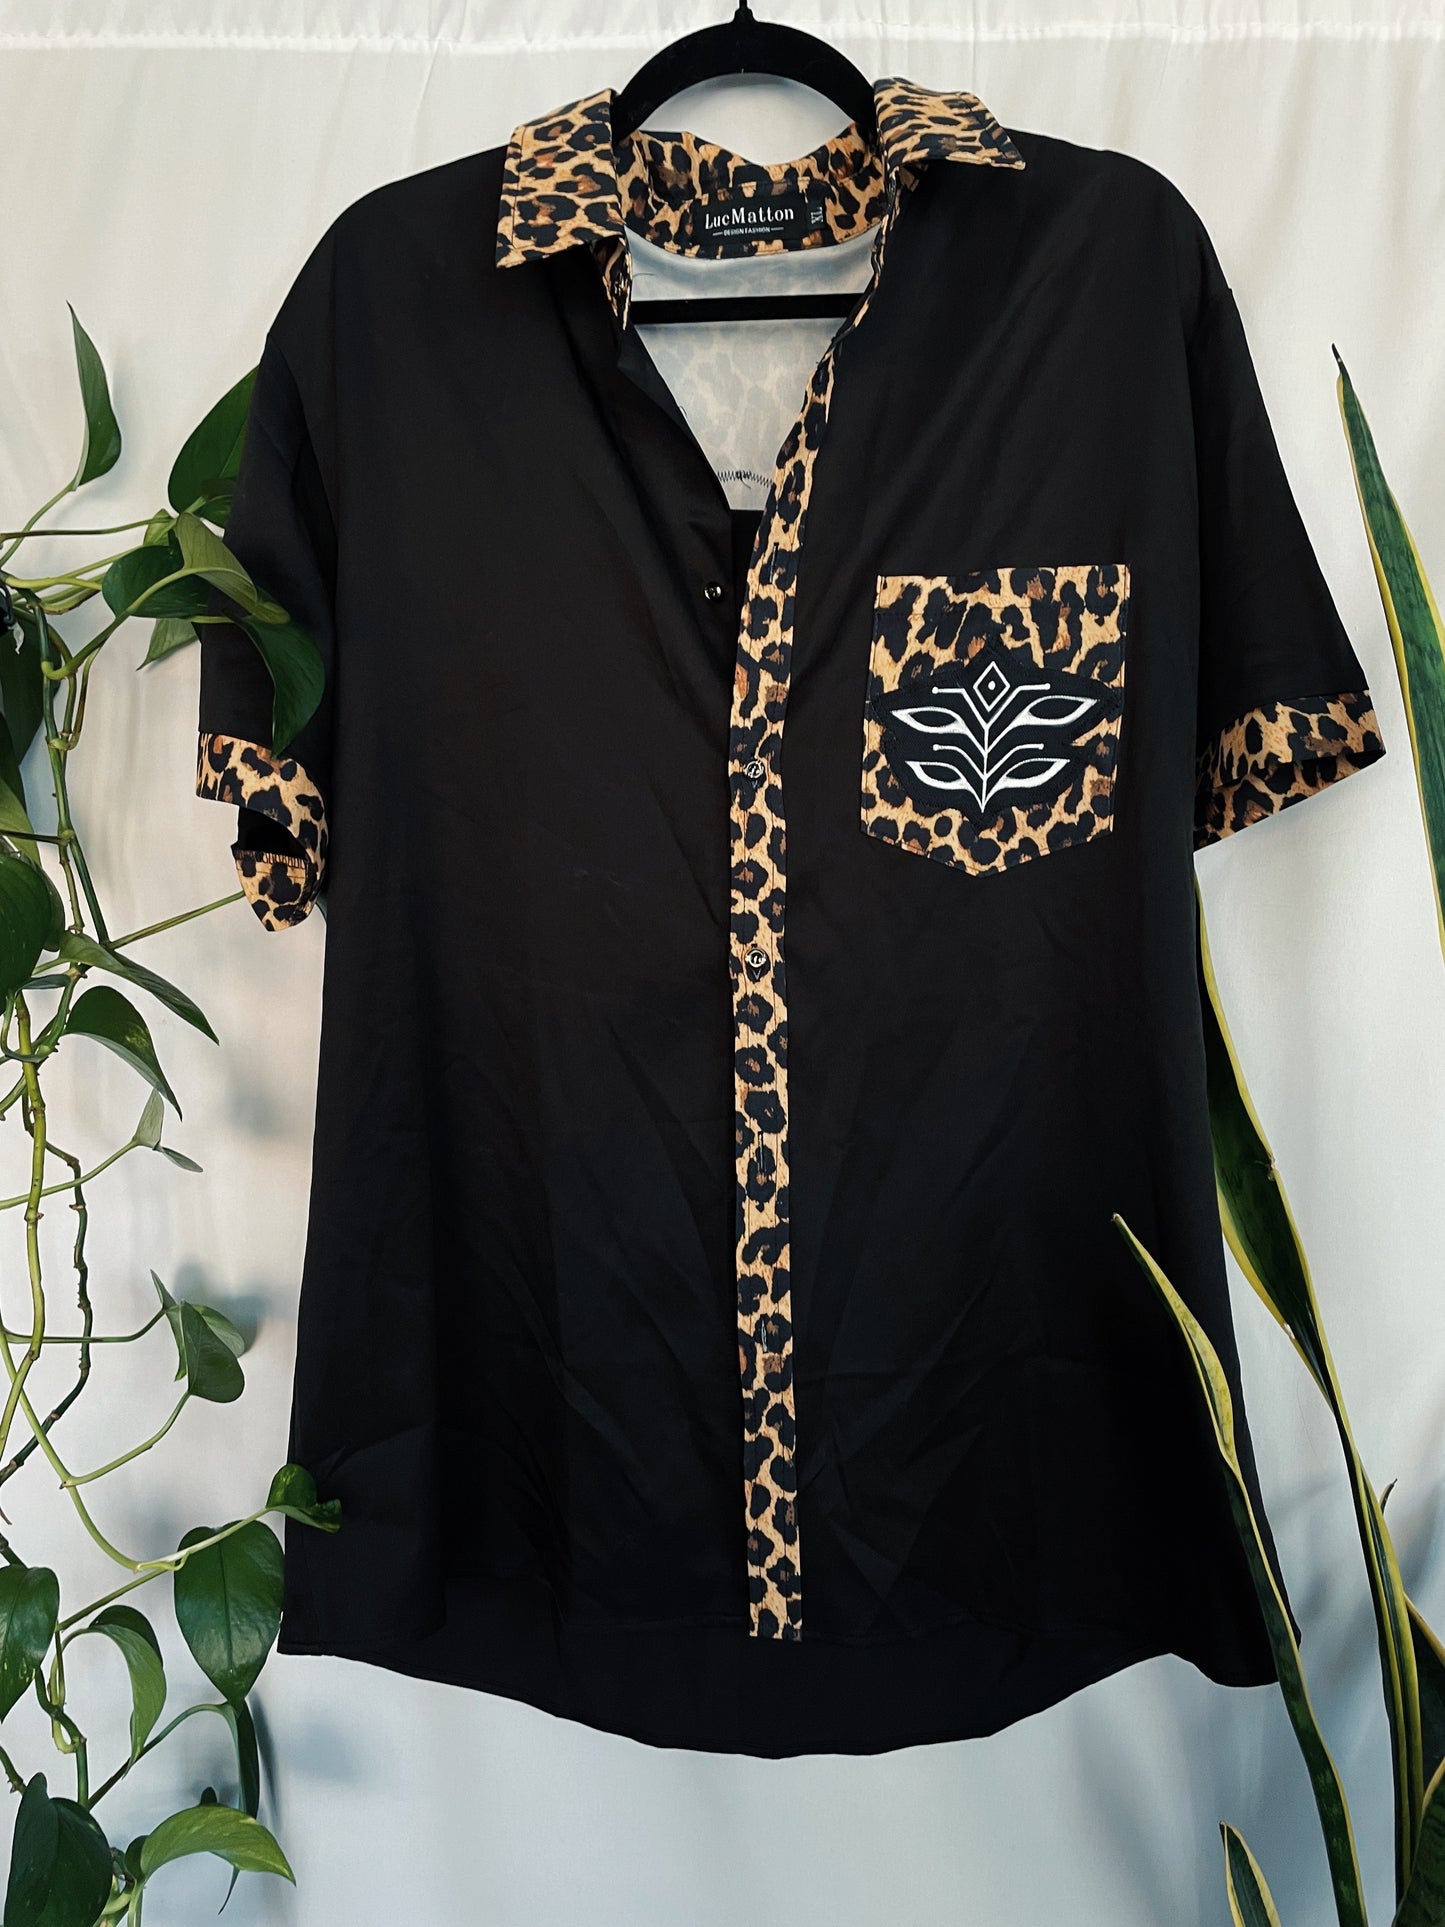 Leopard Button Up Shirt